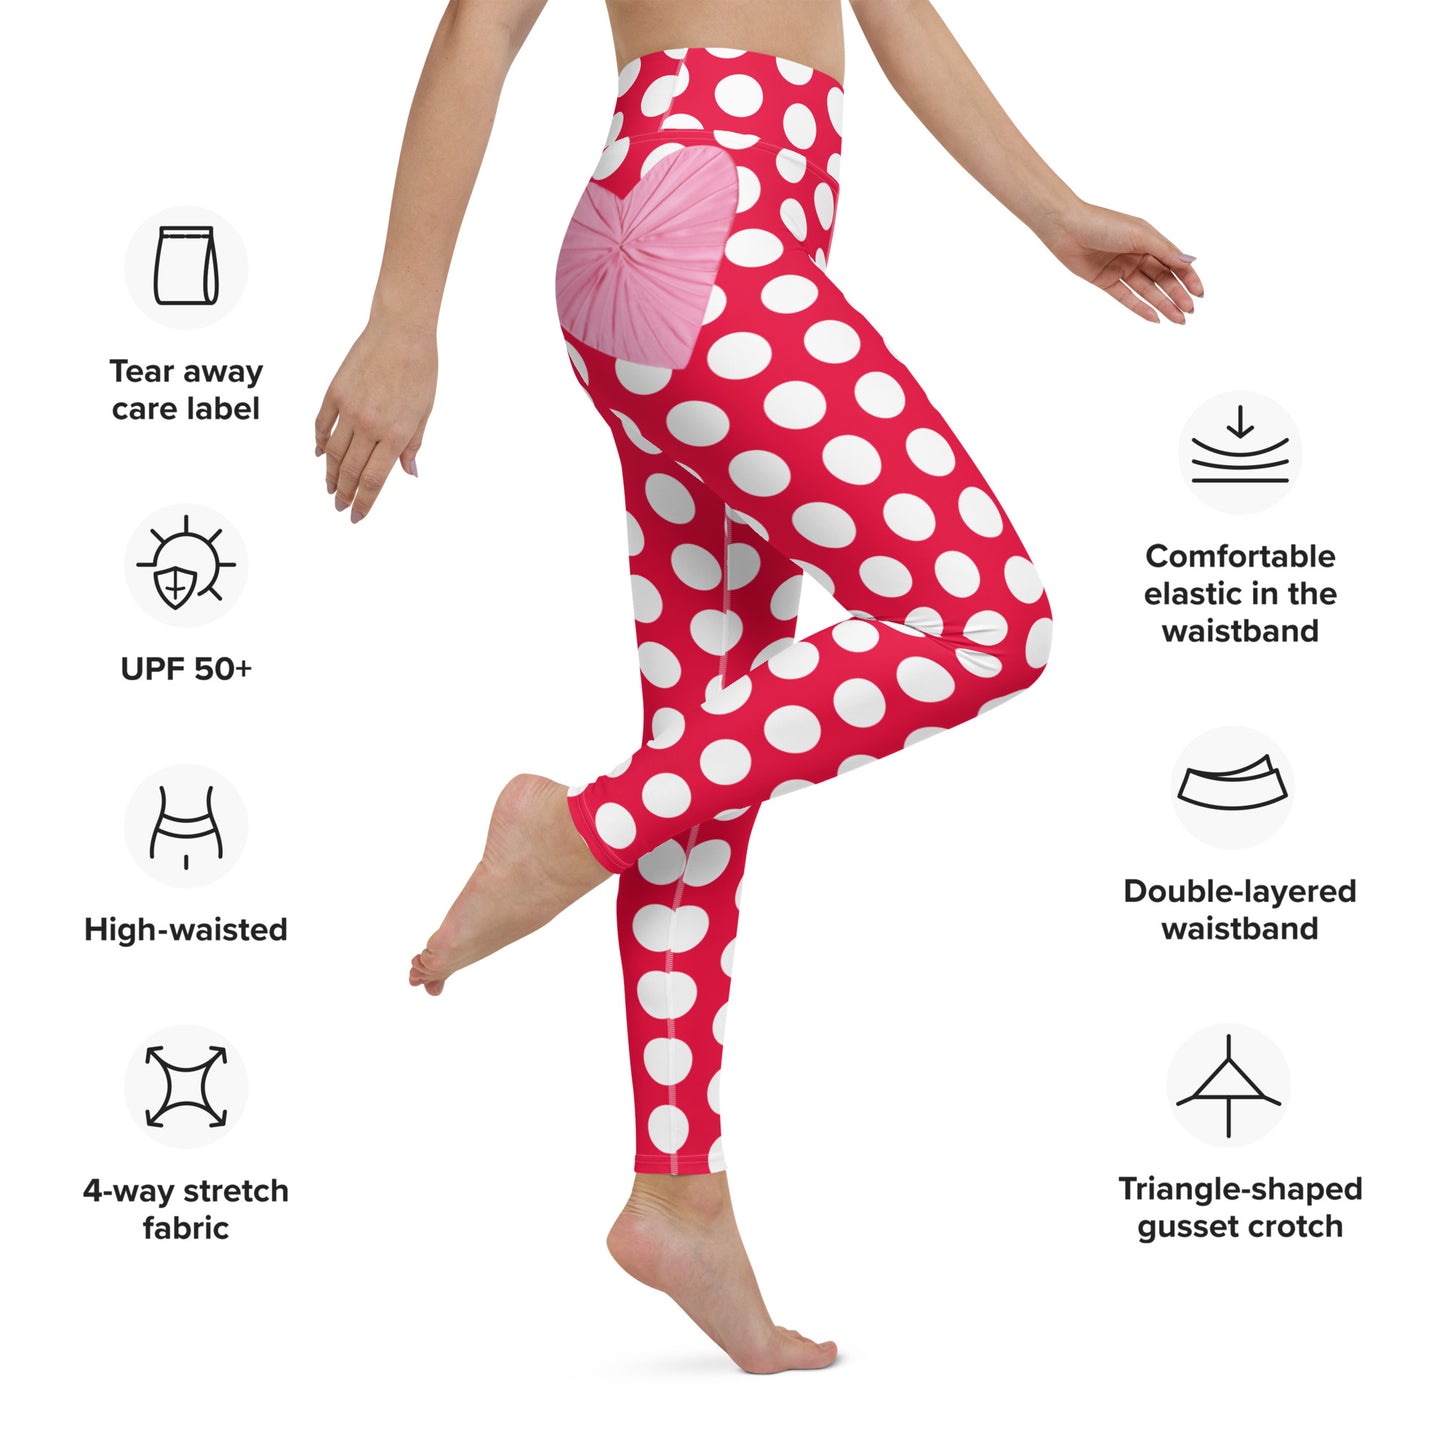 Red Hot Polka Dot Yoga Leggings